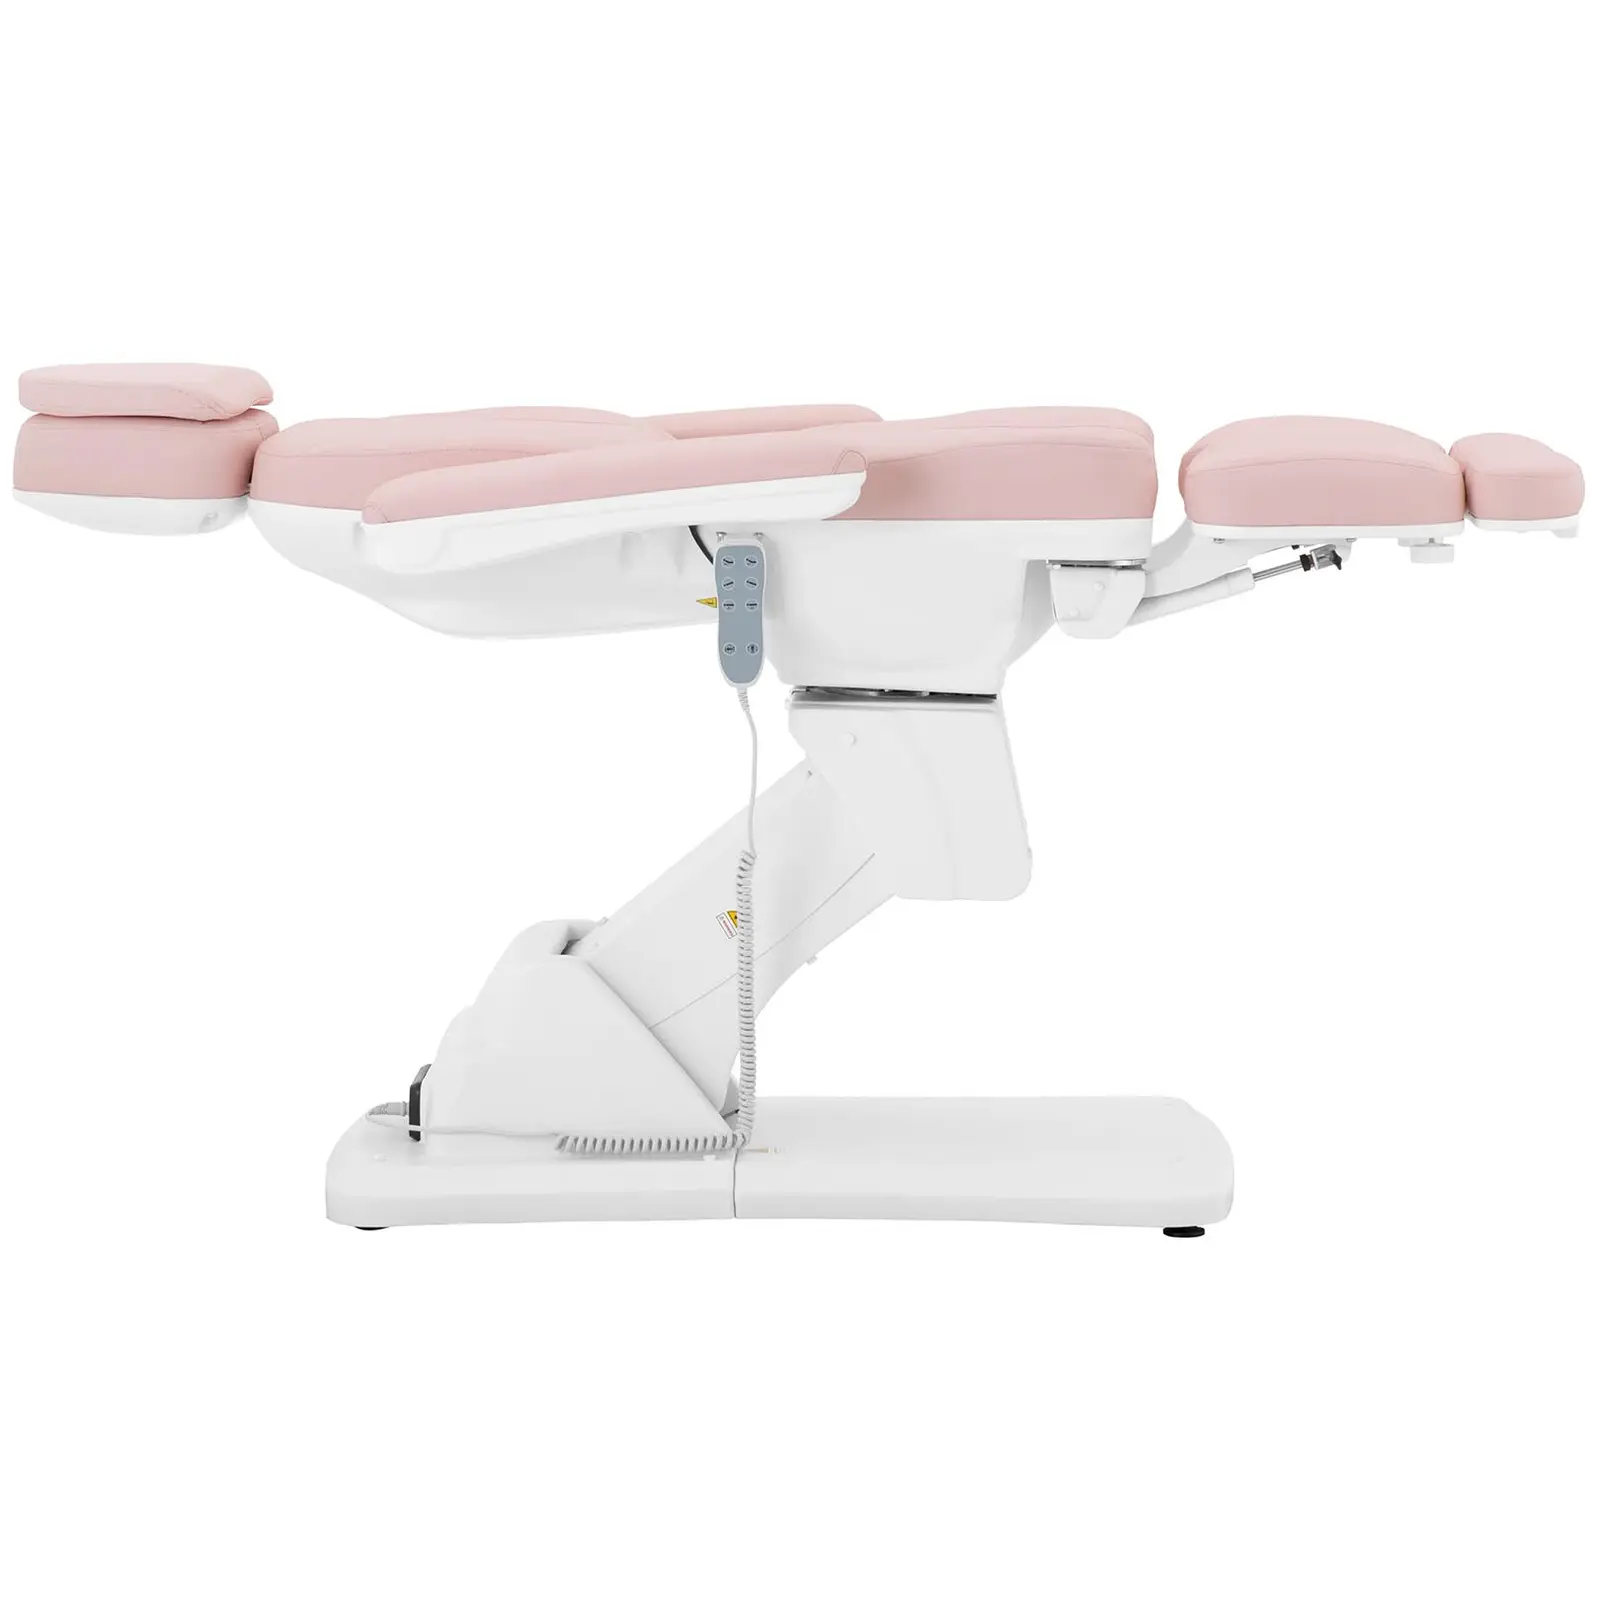 Pedikűrös szék - 350 W - 150 kg - Rózsaszín